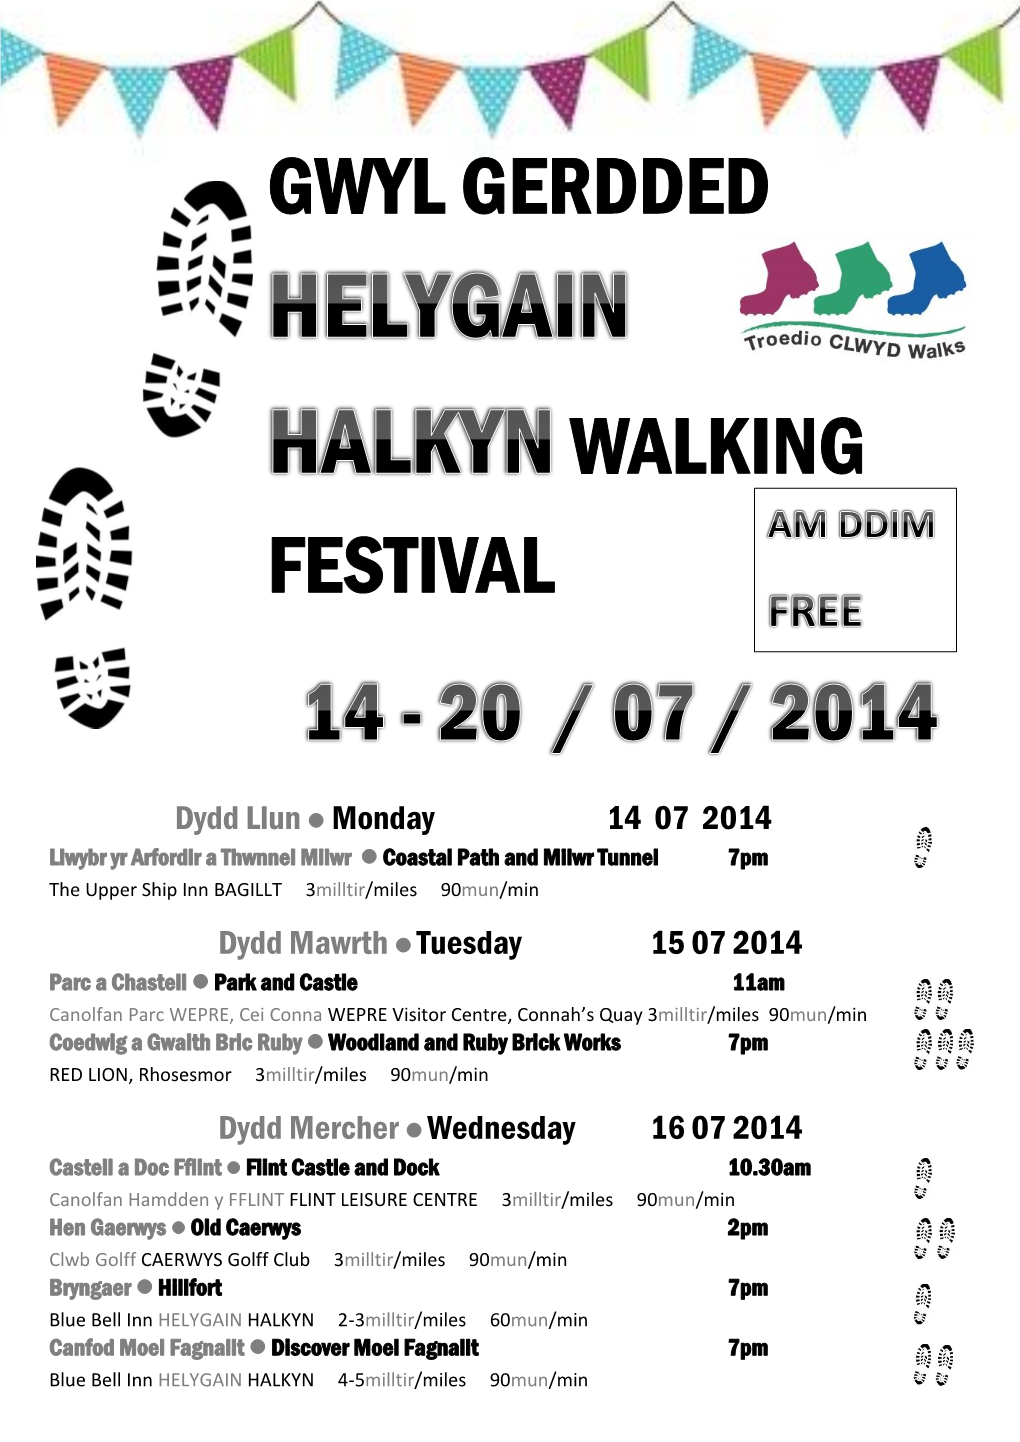 Halkyn Walking Festival